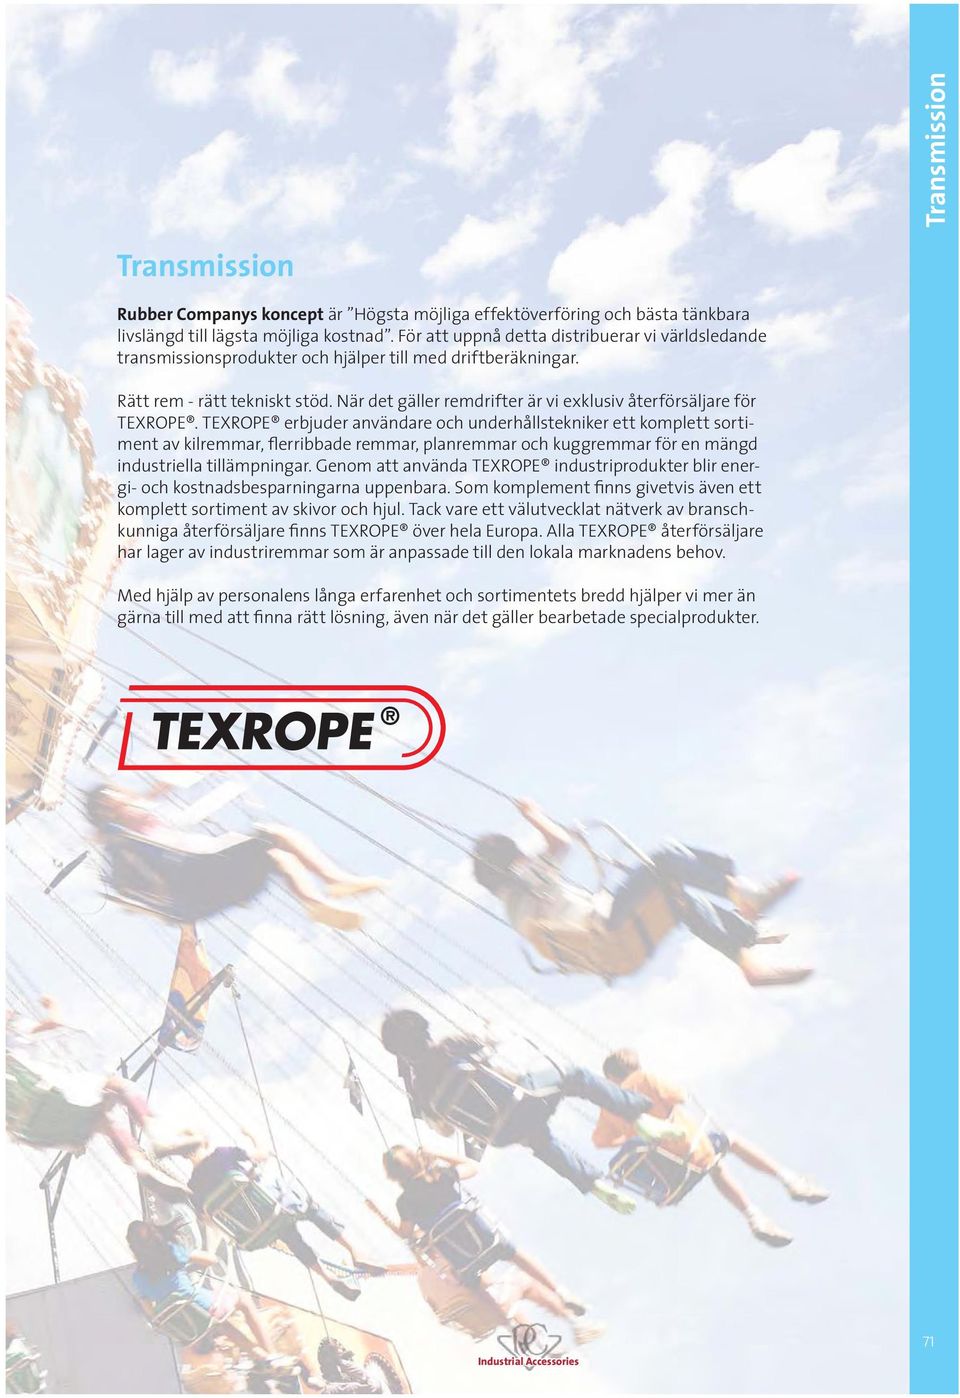 När det gäller remdrifter är vi exklusiv återförsäljare för TEXROPE.